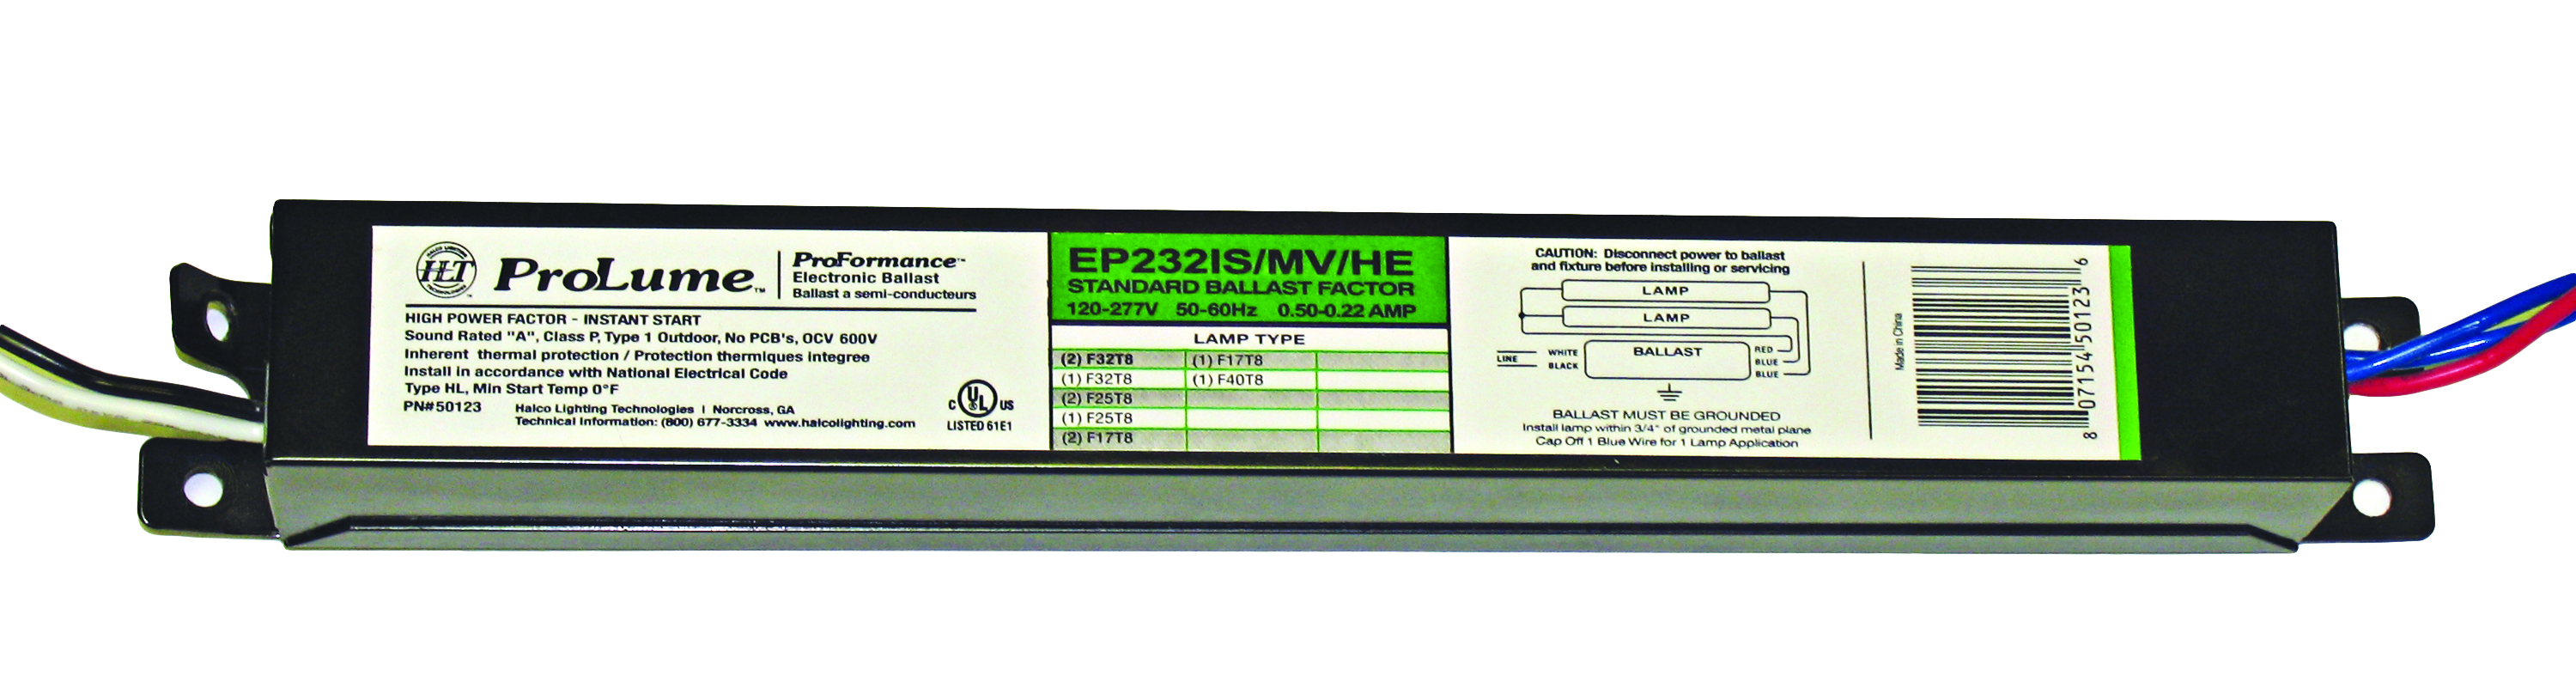 F32T8 2LAMP ELEC MV IS